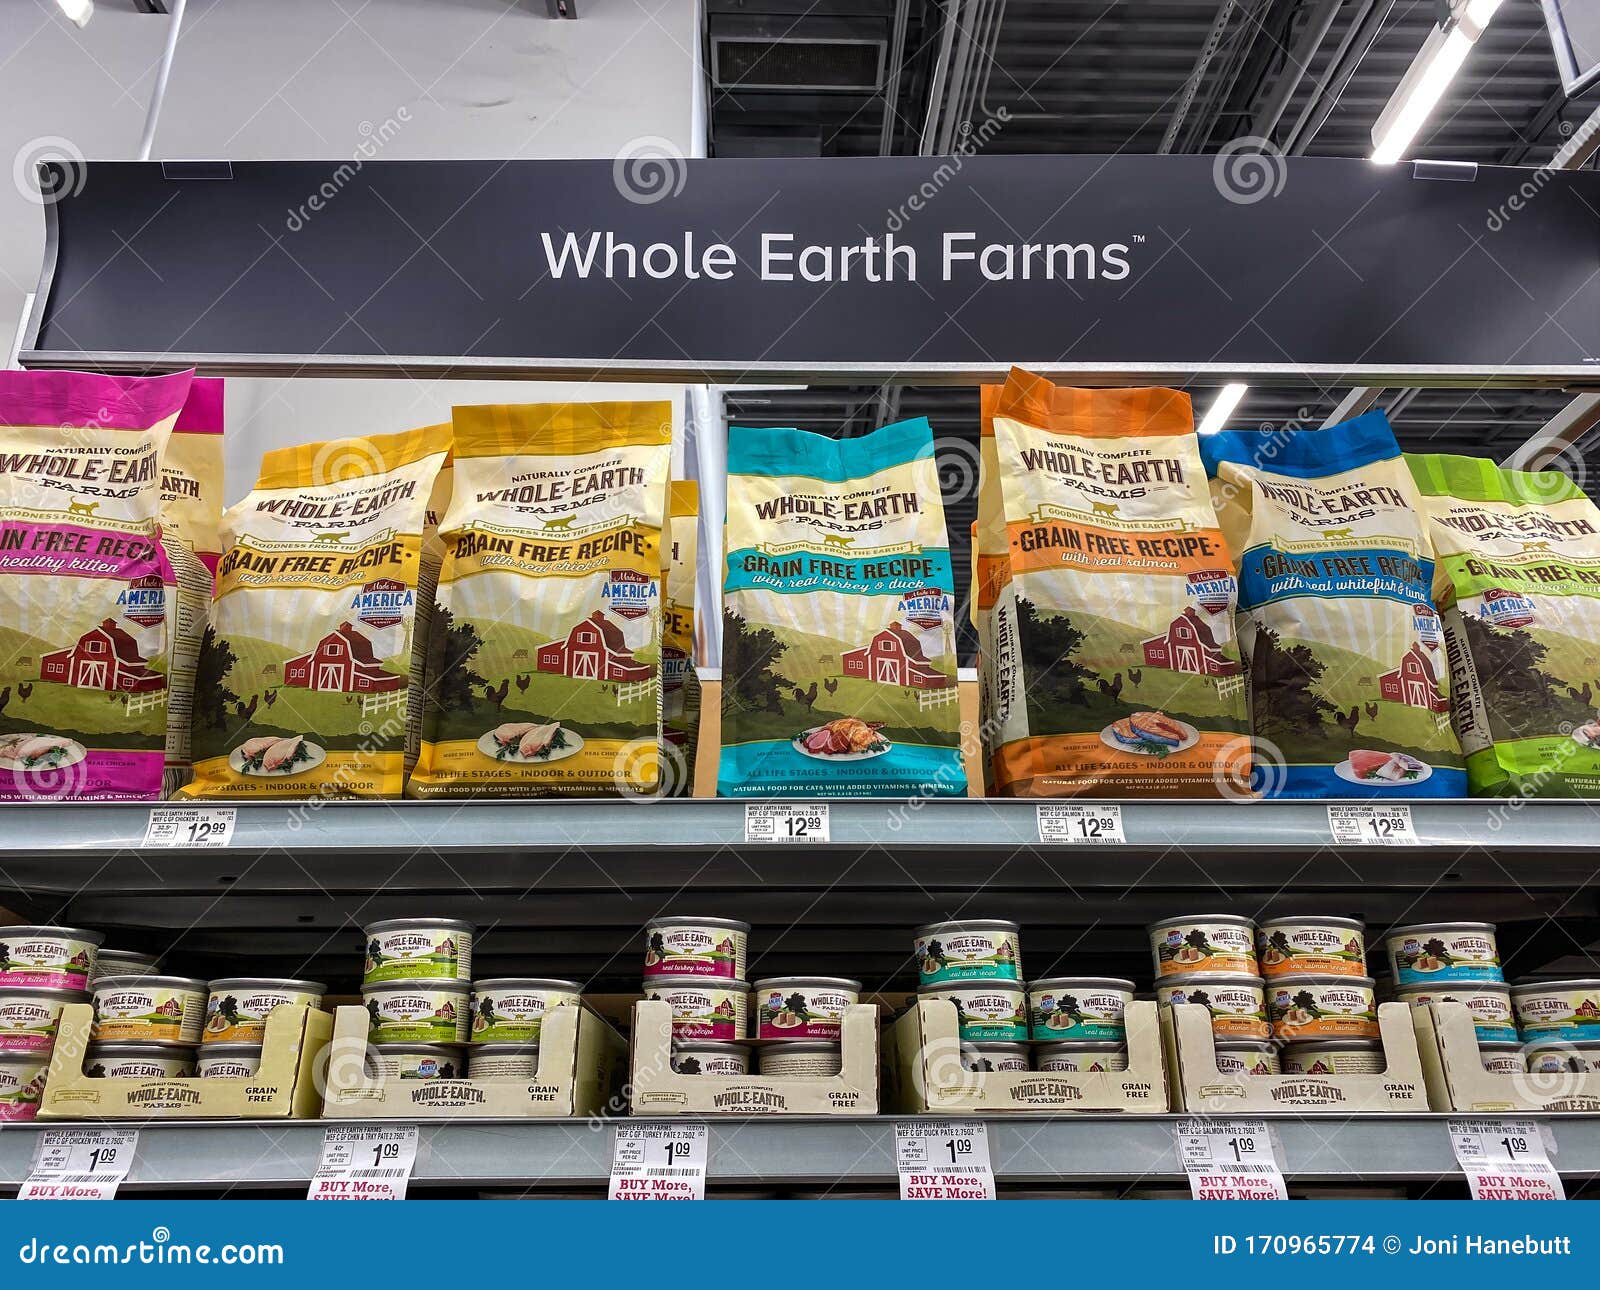 whole earth farms cat food